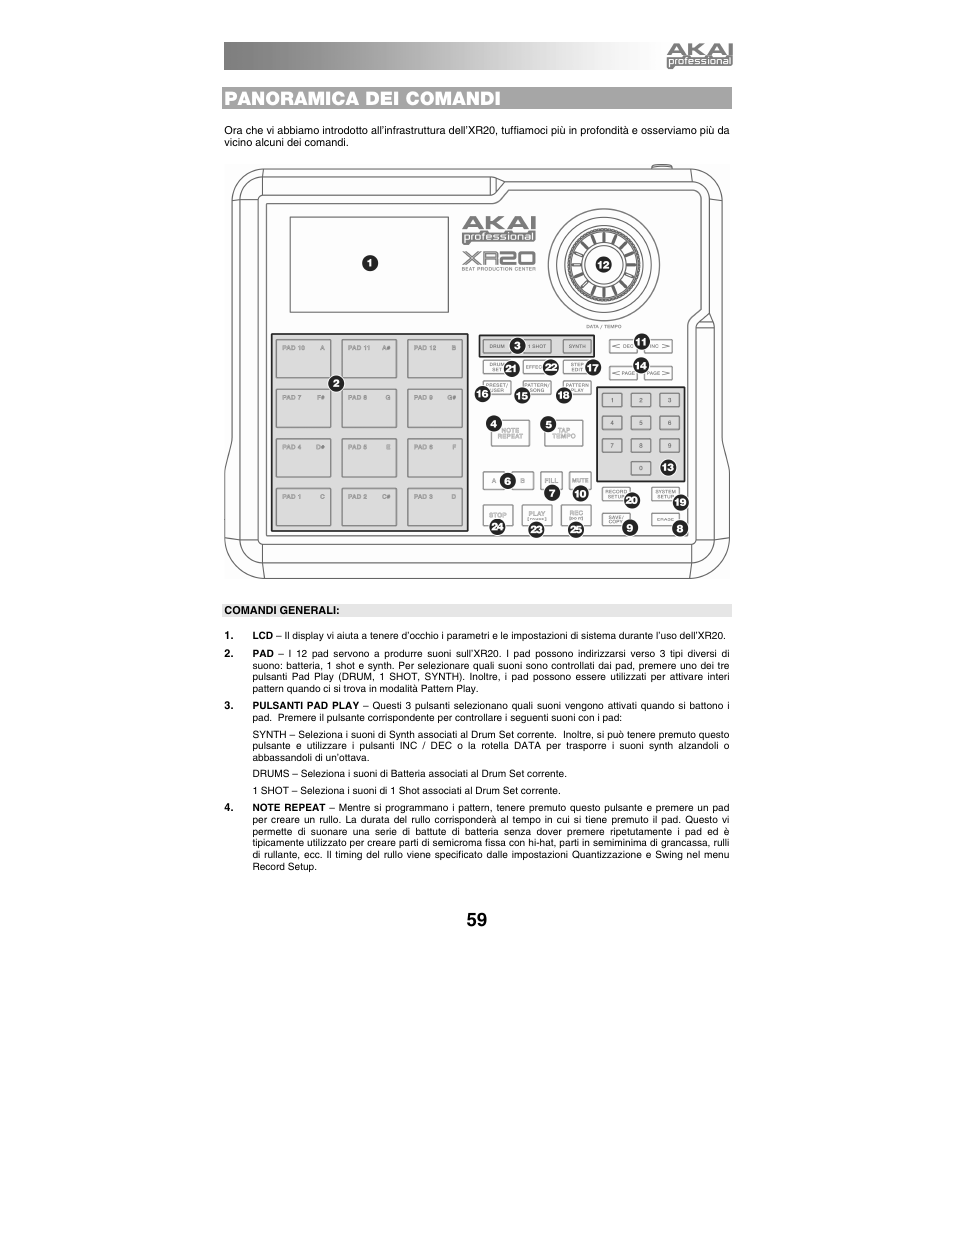 Panoramica dei comandi, Comandi generali | Akai xr20 User Manual | Page 61 / 76